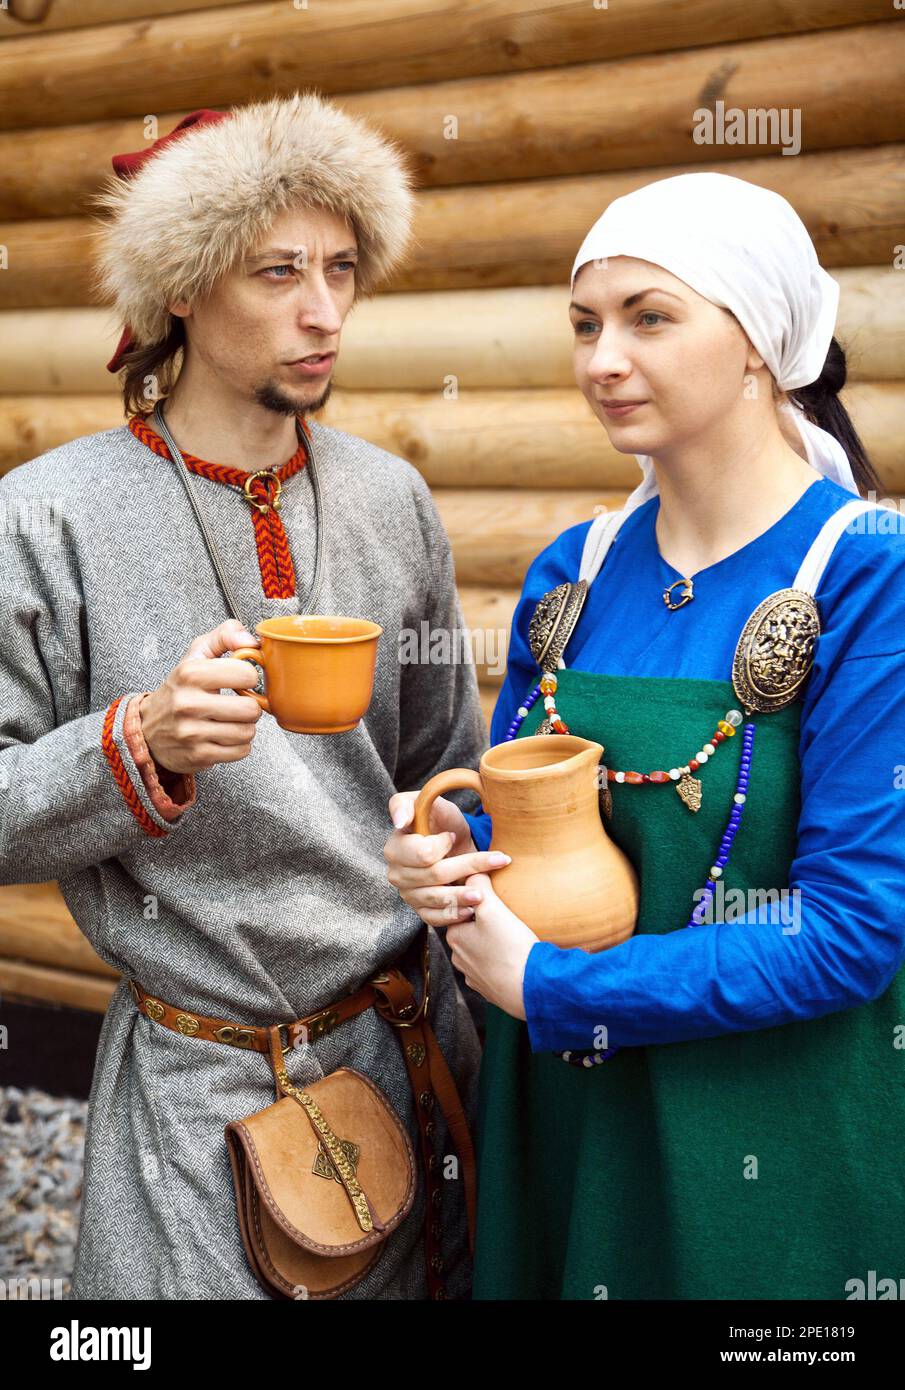 Khabarovsk, Russie - 11 juin 2017: Jeune couple portant des costumes d'époque médiévale. Homme et femme dans des vêtements de paysans d'âge moyen au reenactme historique Banque D'Images